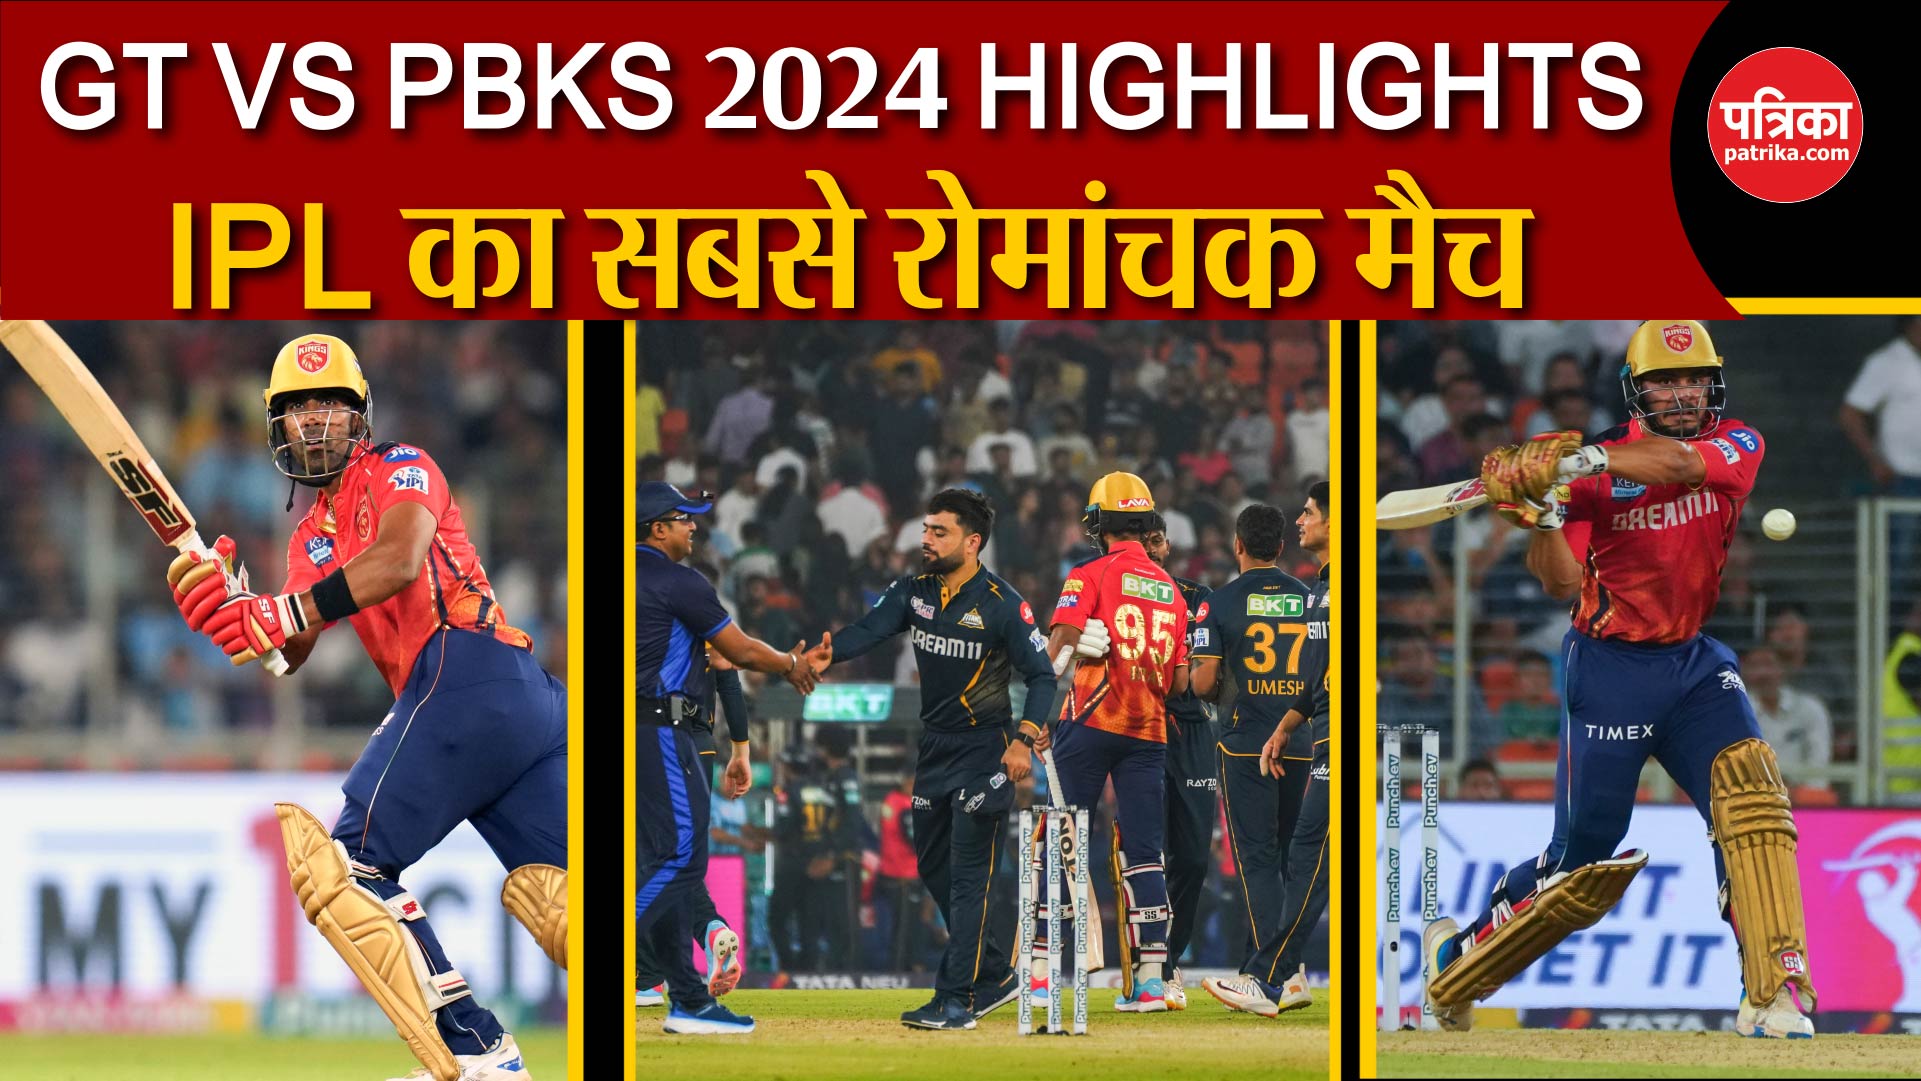 GT VS PBKS 2024 HIGHLIGHTS: IPL 2024 का सबसे रोमांचक मैच